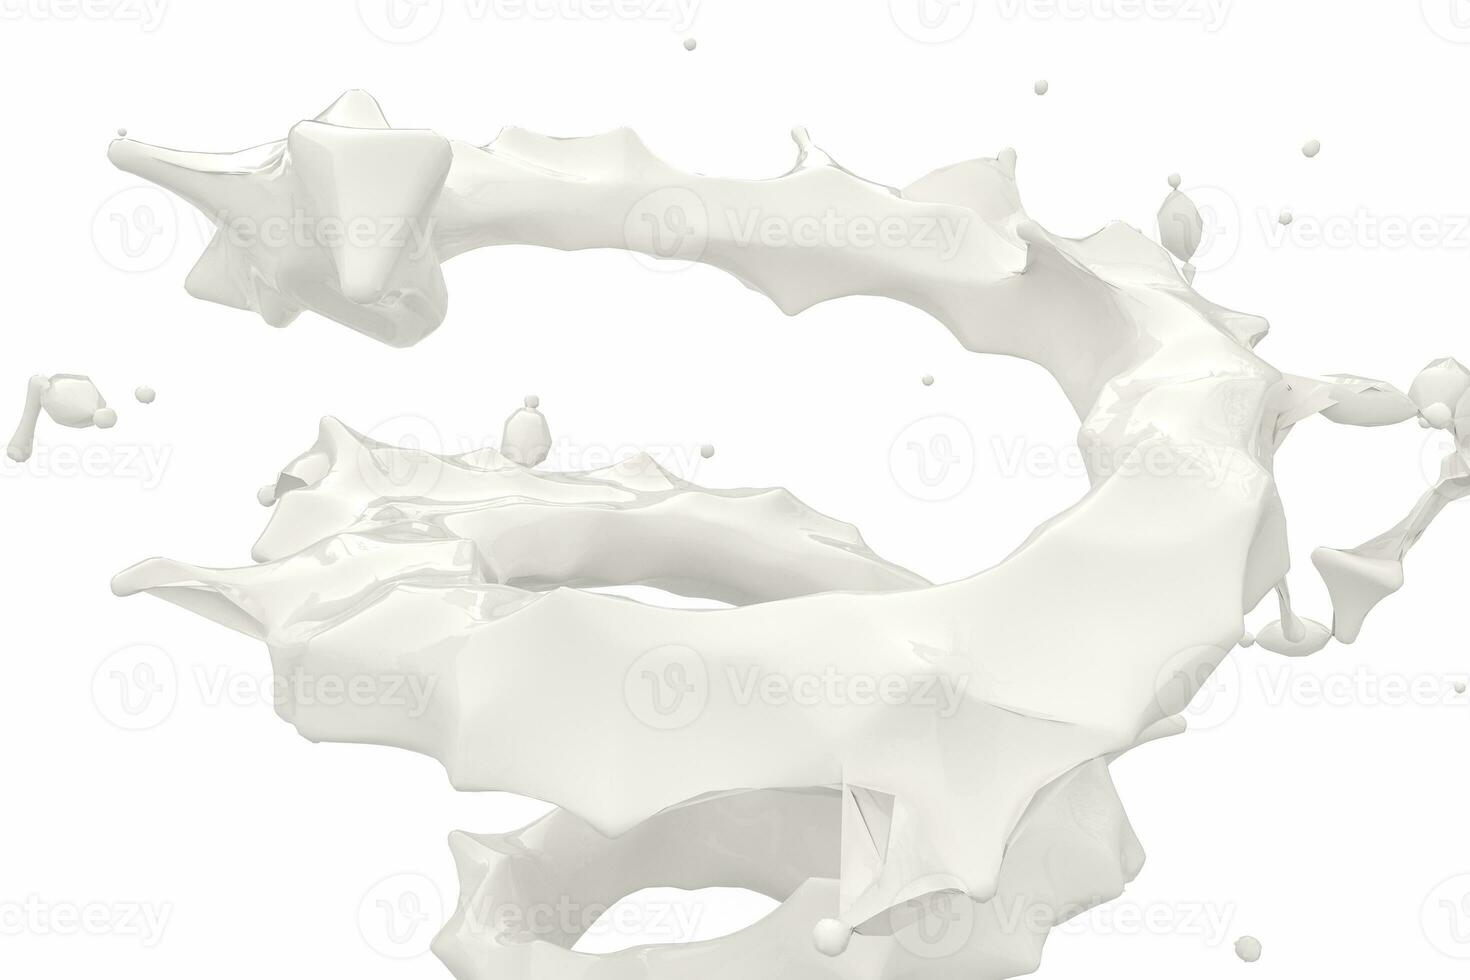 zuiverheid spatten melk met creatief vormen, 3d weergave. foto